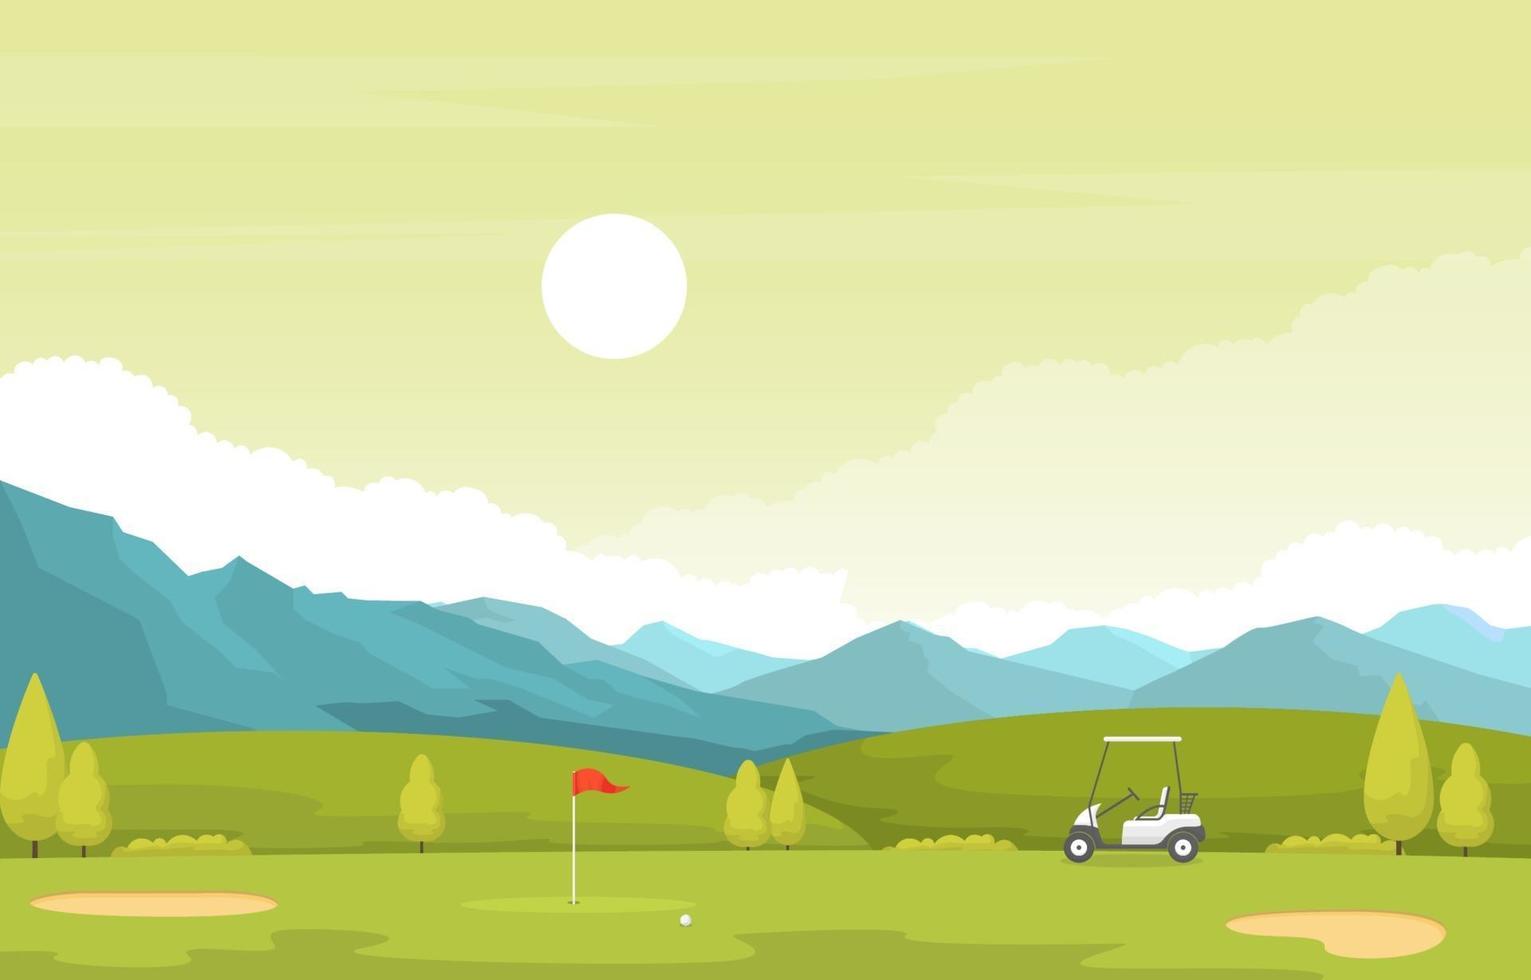 campo de golf con bandera roja, carrito de golf y montañas vector